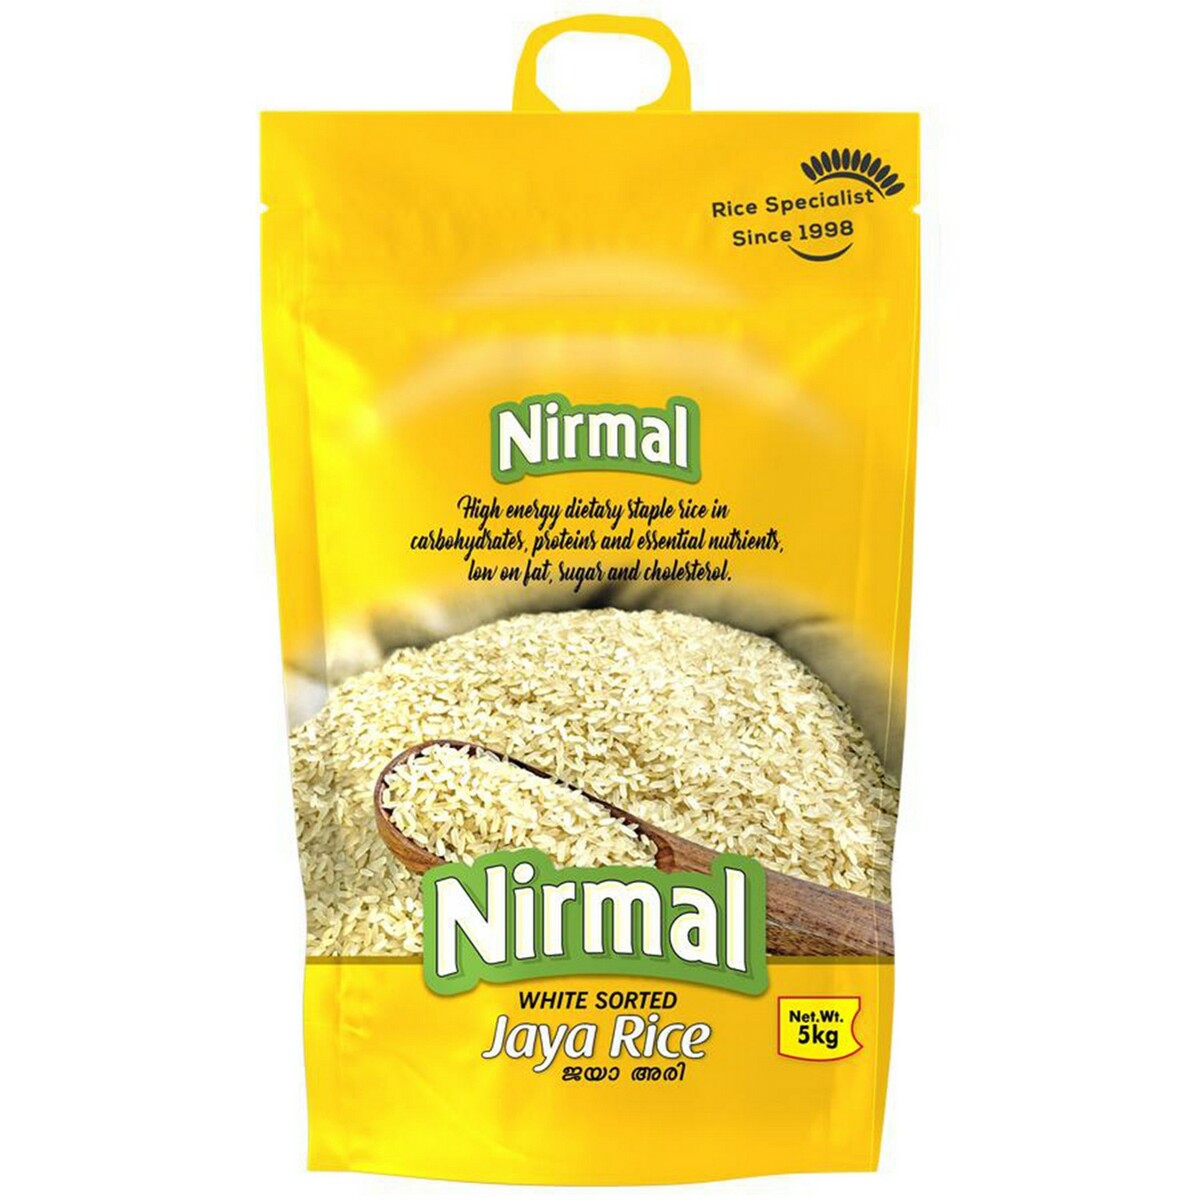 Nirmal Jaya rice 5kg